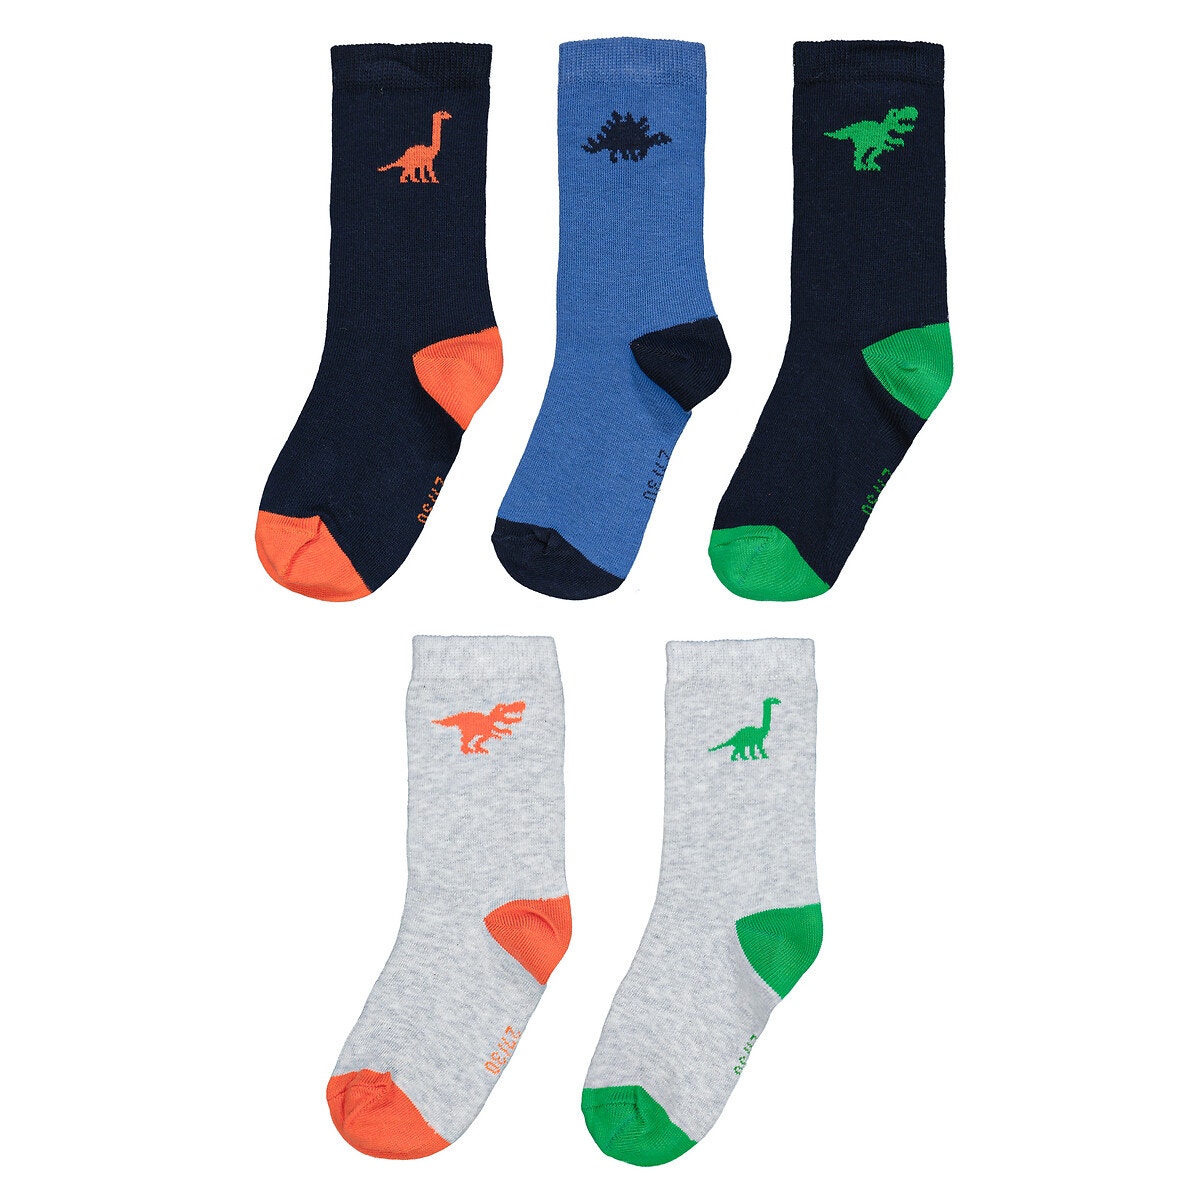 Μόδα > Παιδικά > Αγόρι > Κάλτσες Σετ 5 ζευγάρια κάλτσες με μοτίβο δεινόσαυρο